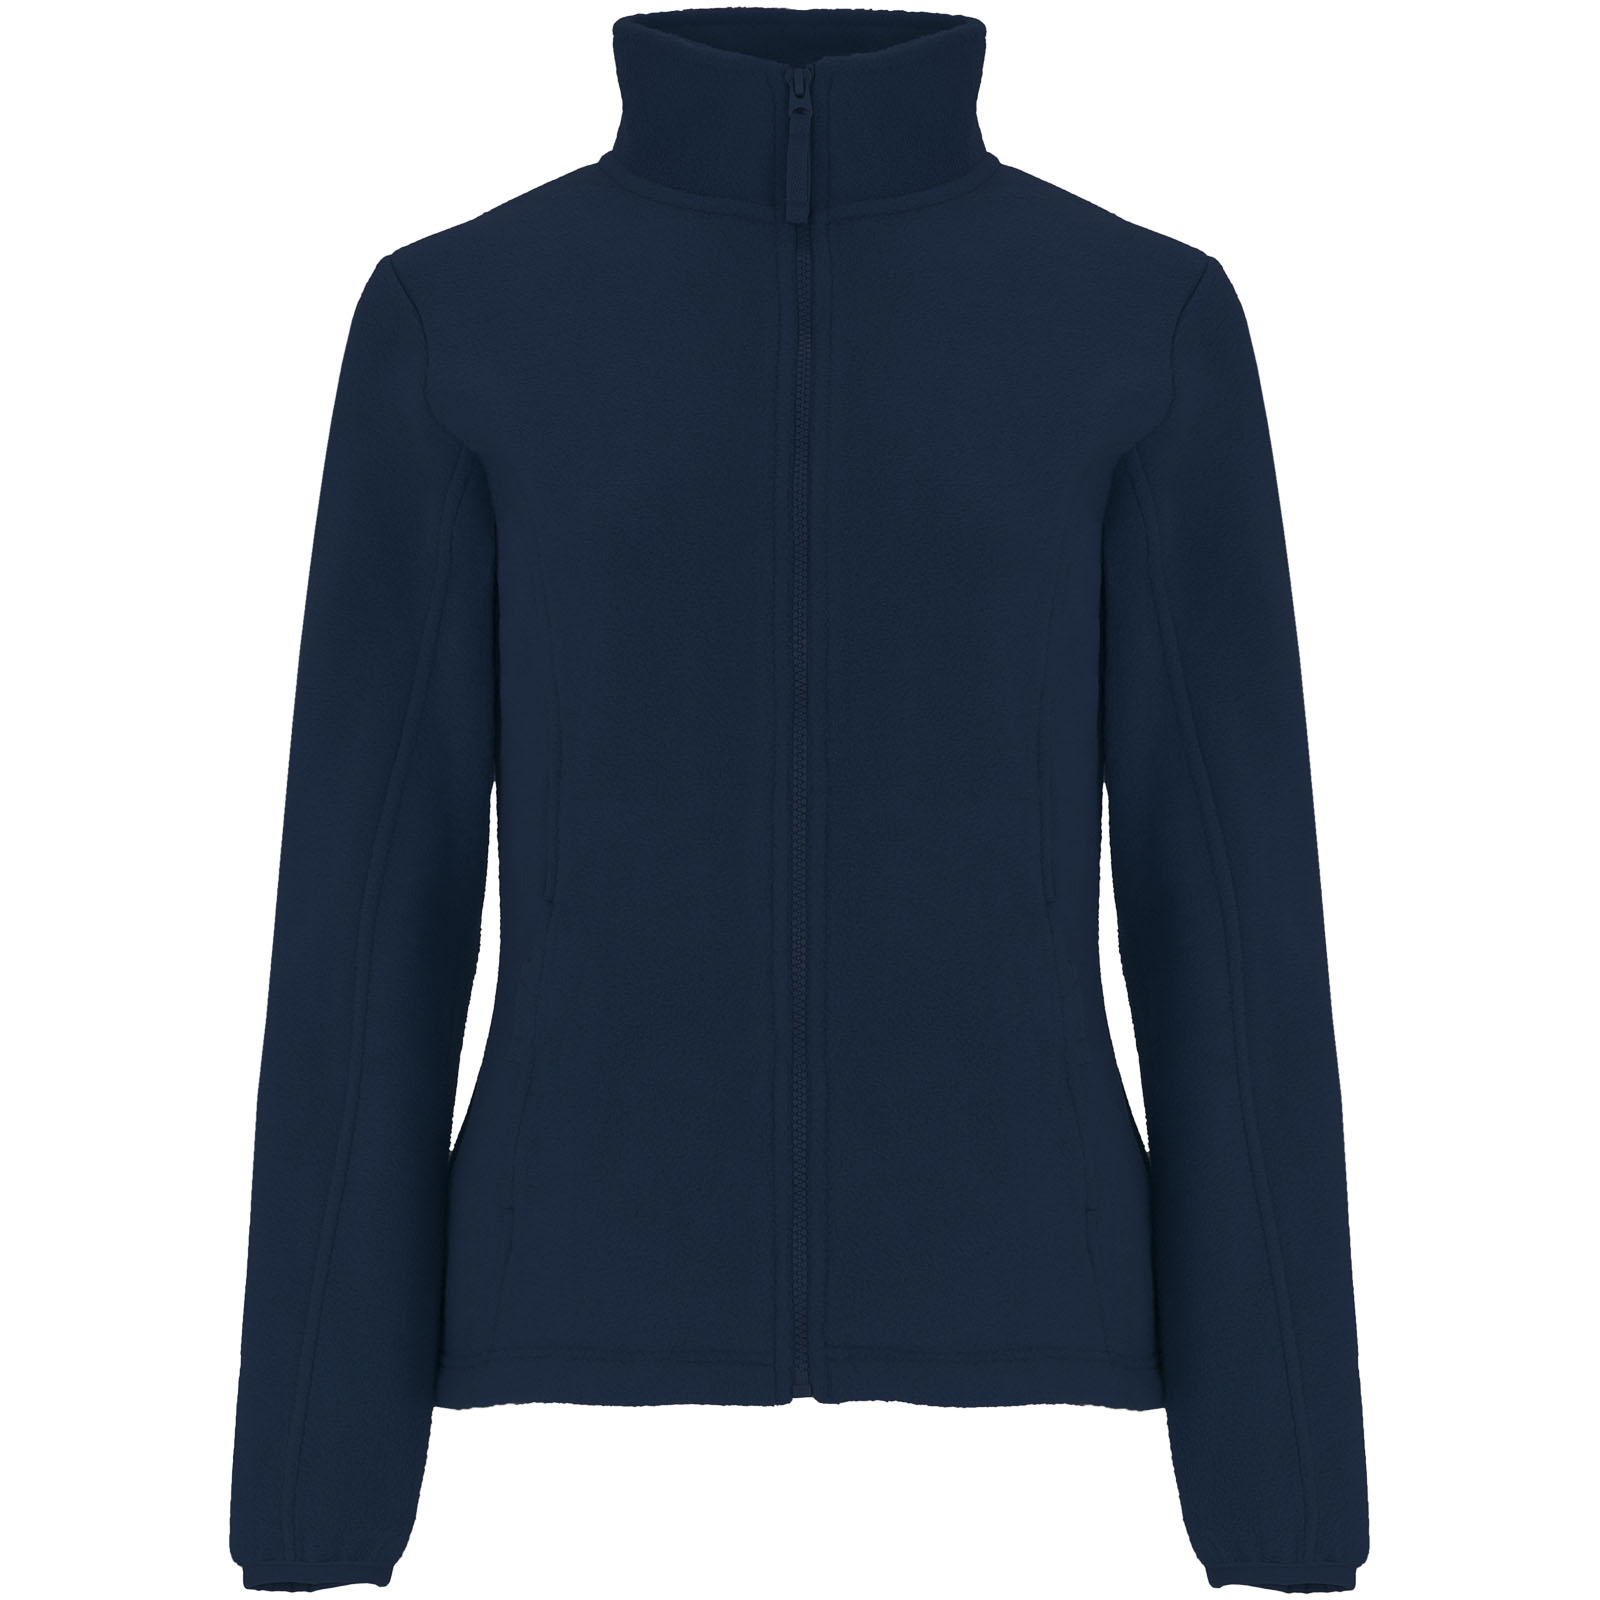 Advertising Fleece - Artic women's full zip fleece jacket - 0